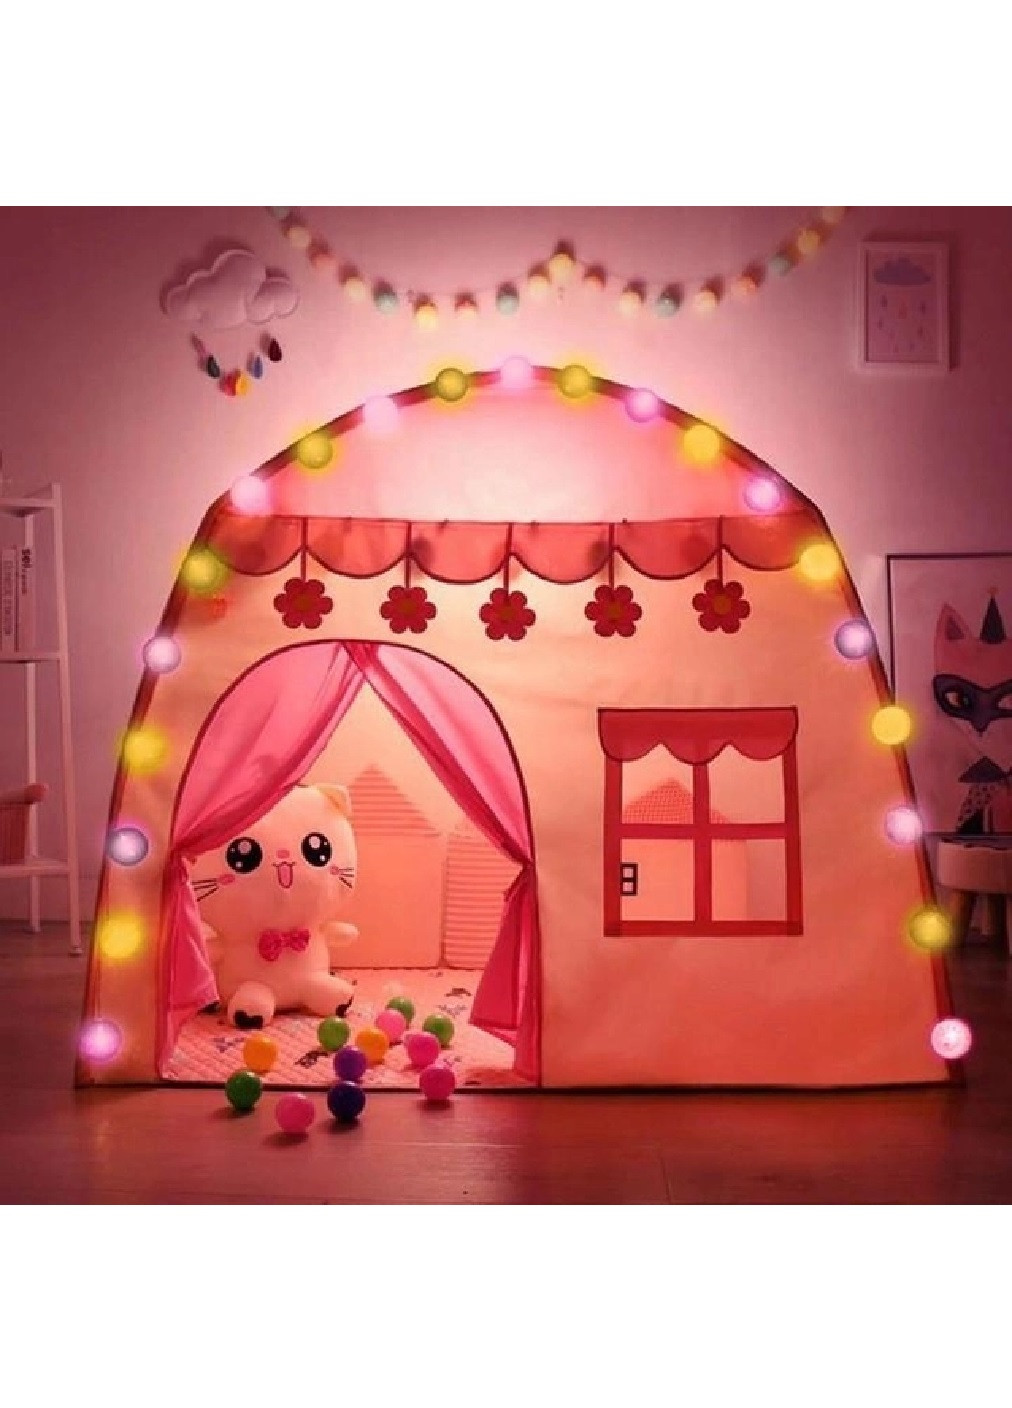 Детская игровая палатка шатер домик с гирляндой для детей малышей 123х123х140 см (475161-Prob) Розовый Unbranded (262596928)